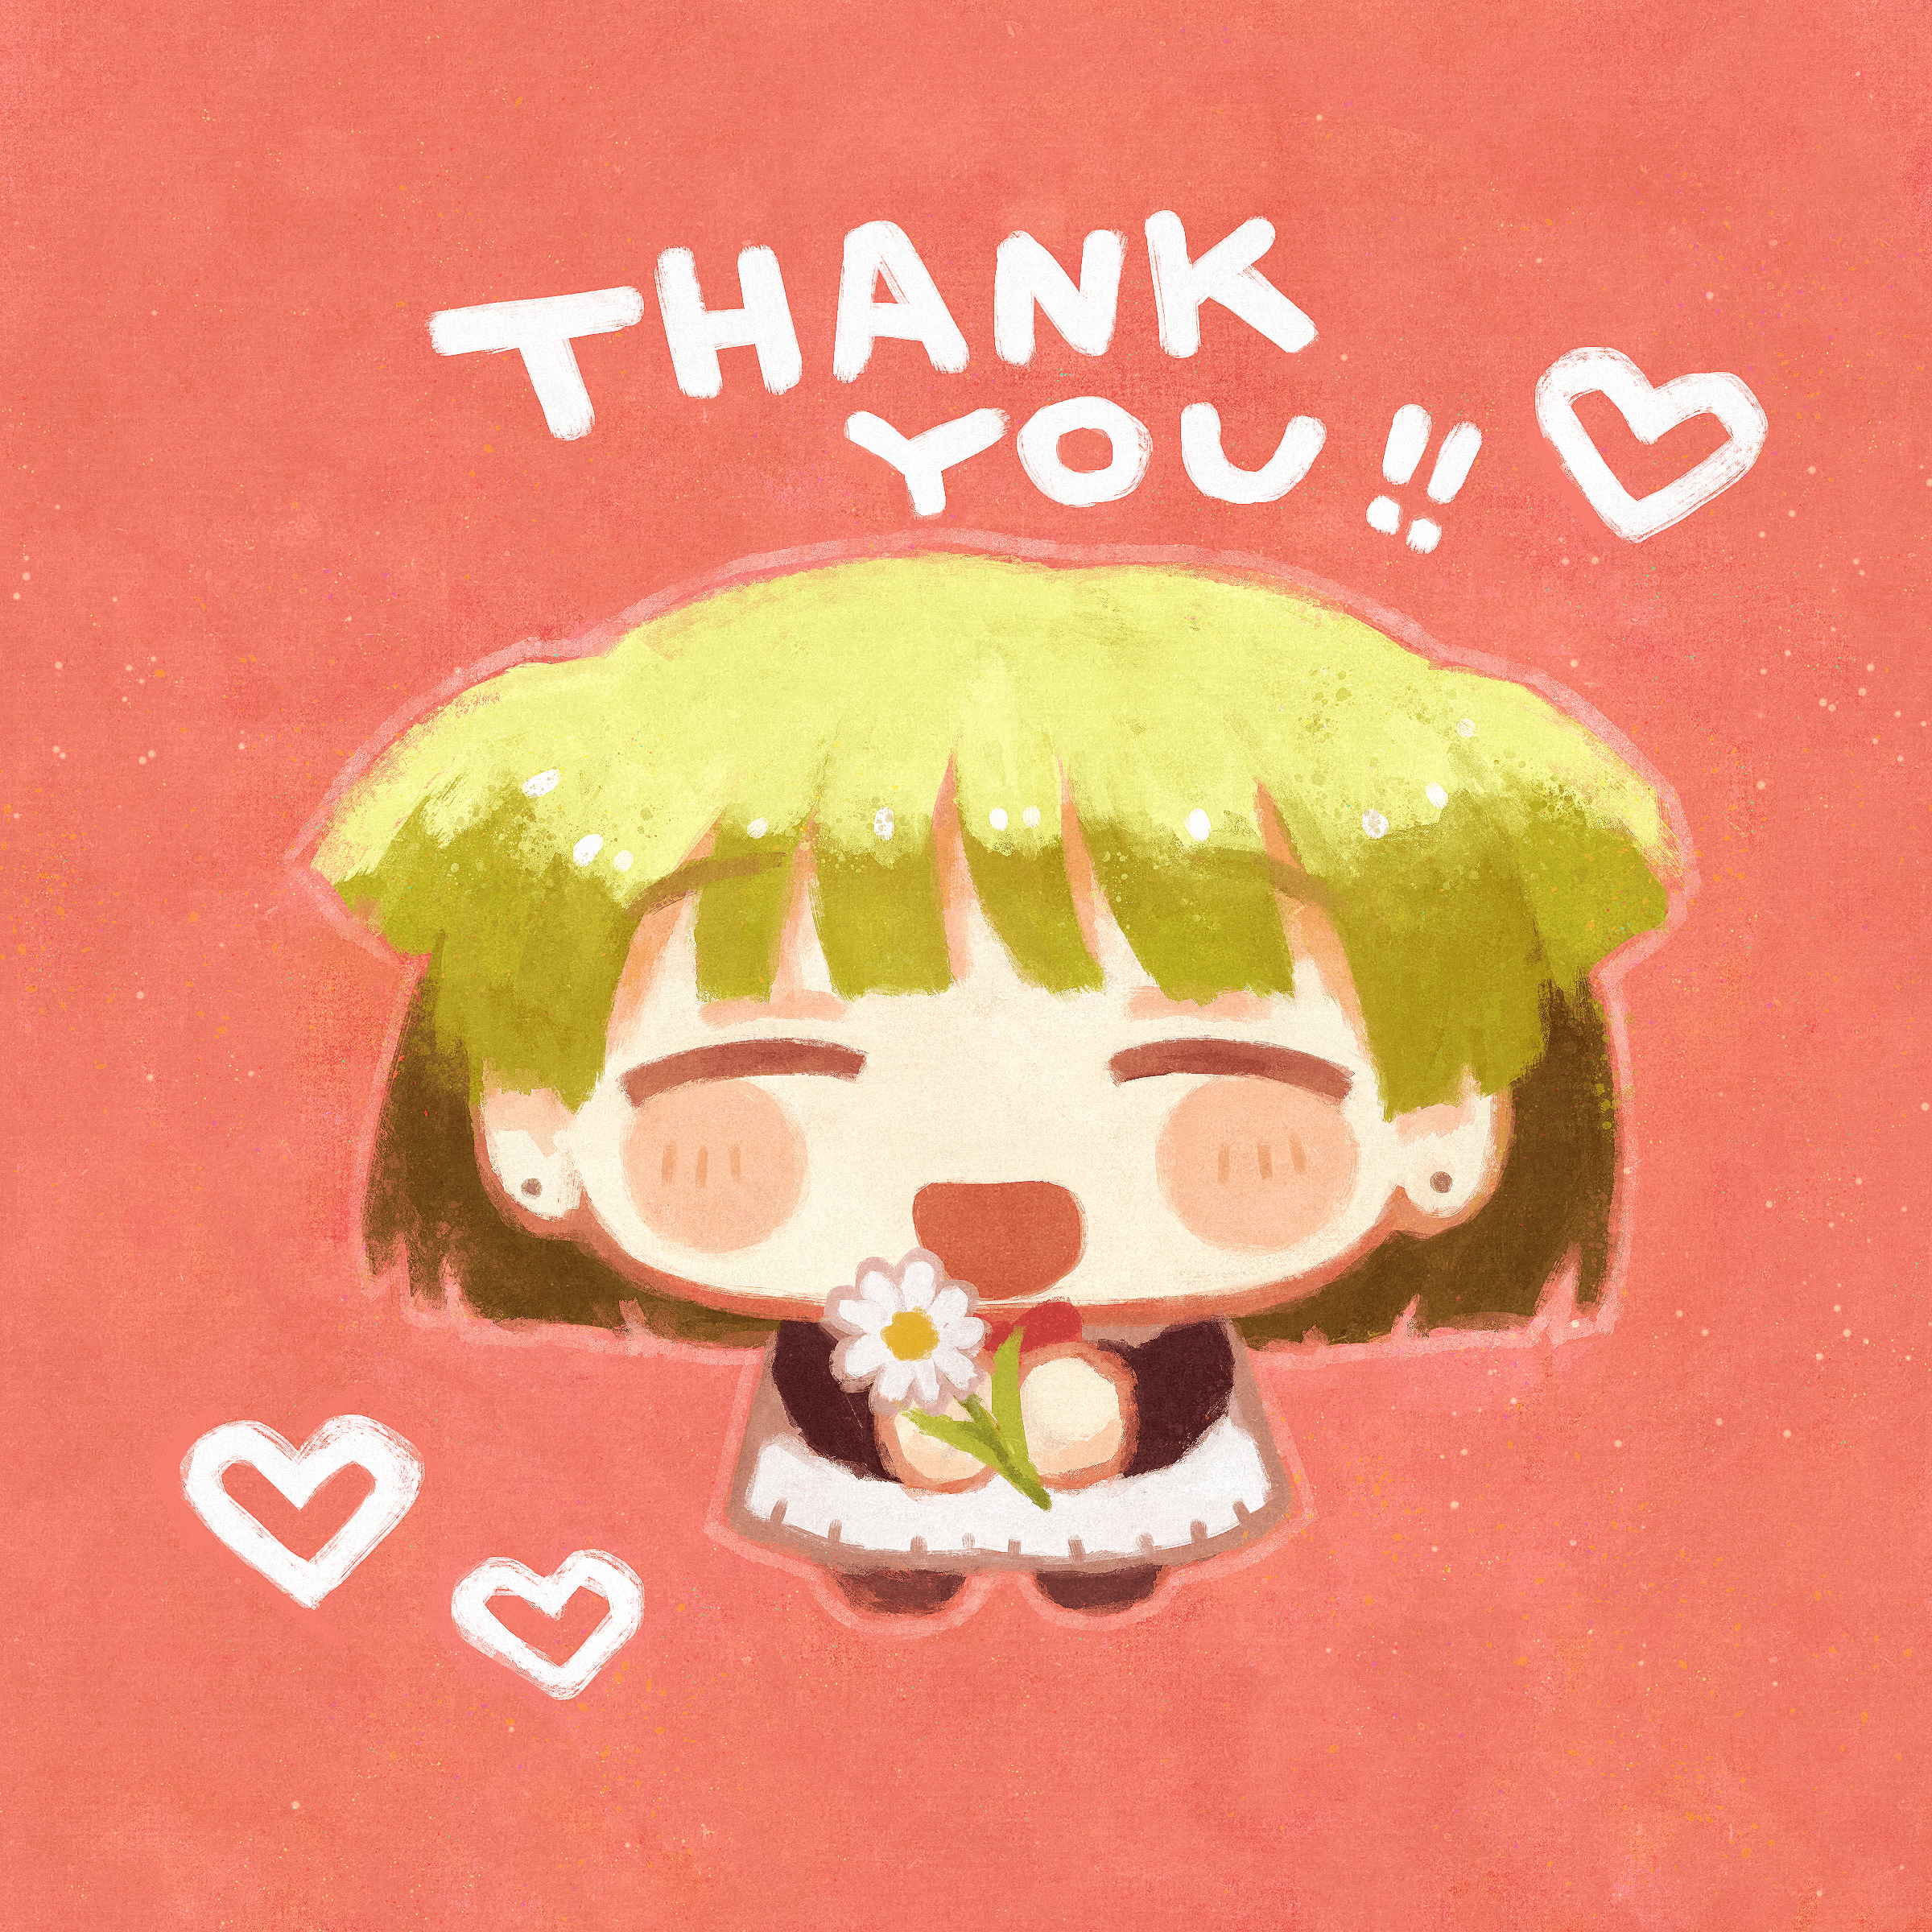 Chizu-chan " Thank you!! "